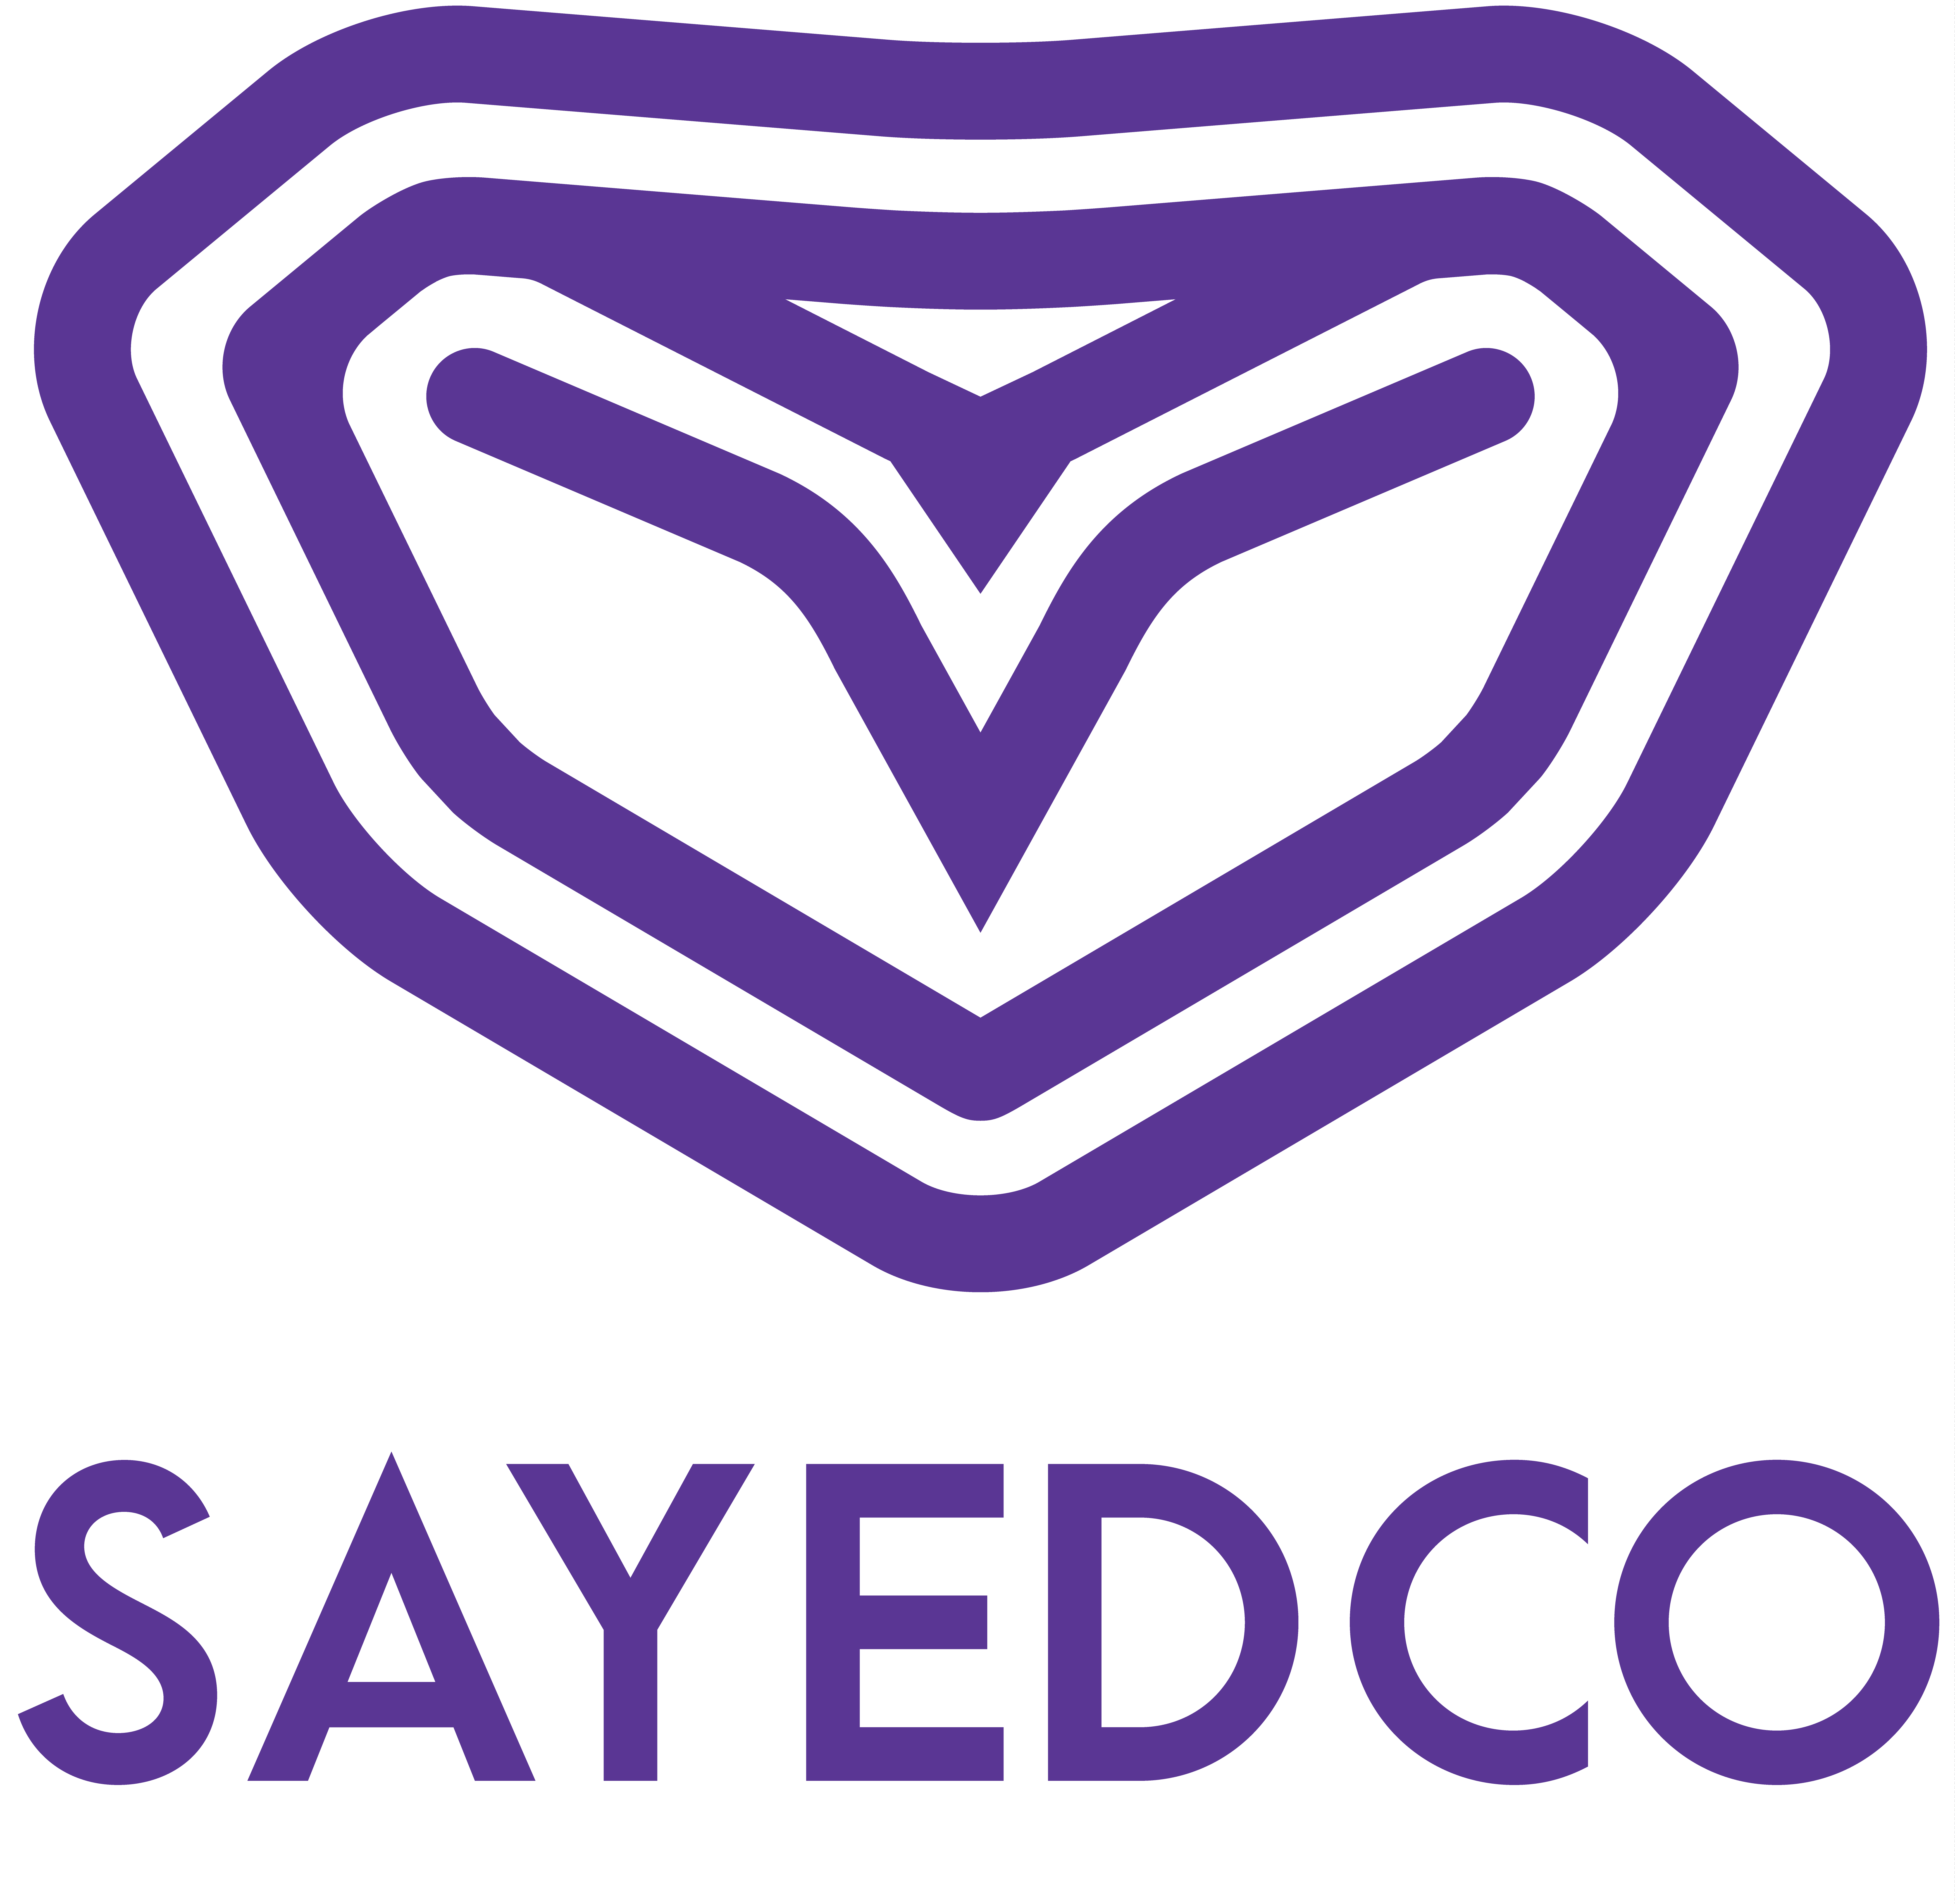 Sayedco